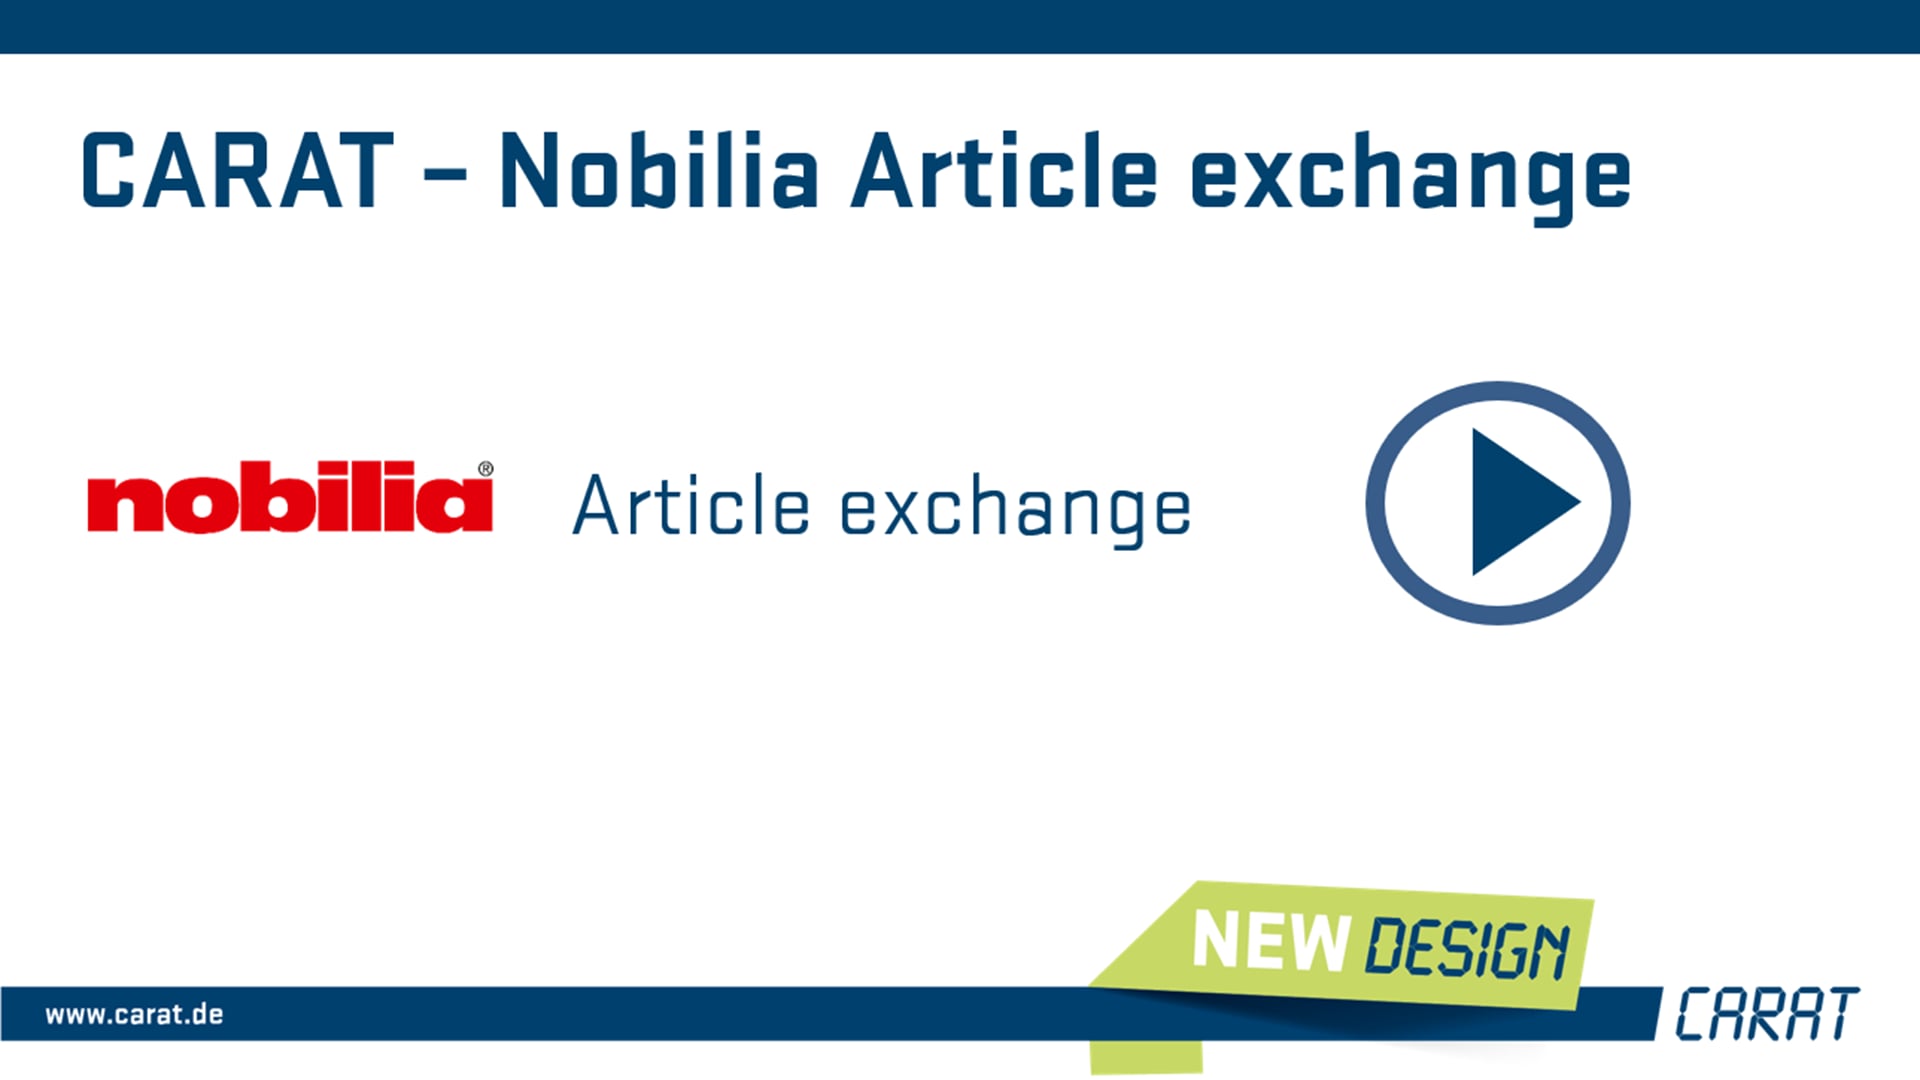 Nobilia Article exchange